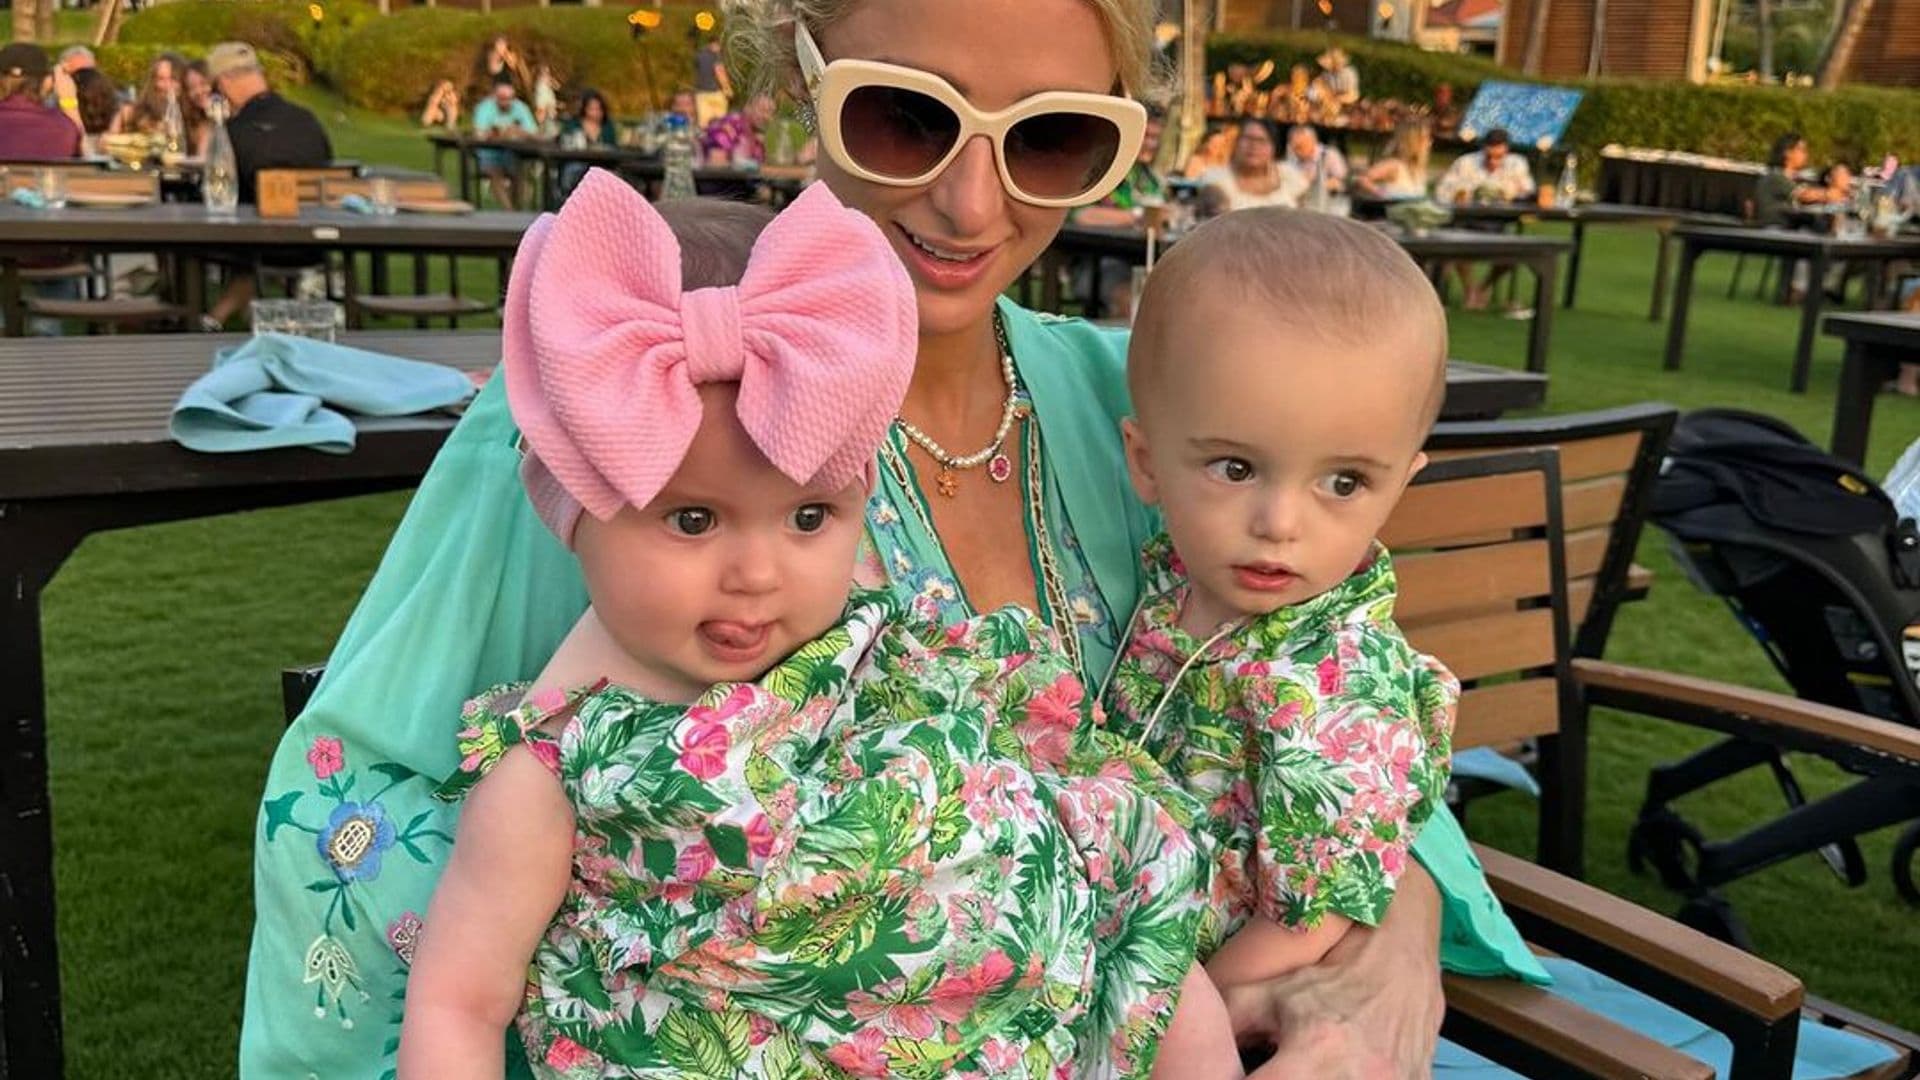 A bordo de un jet privado, Paris Hilton luce pijamas a juego con sus hijos